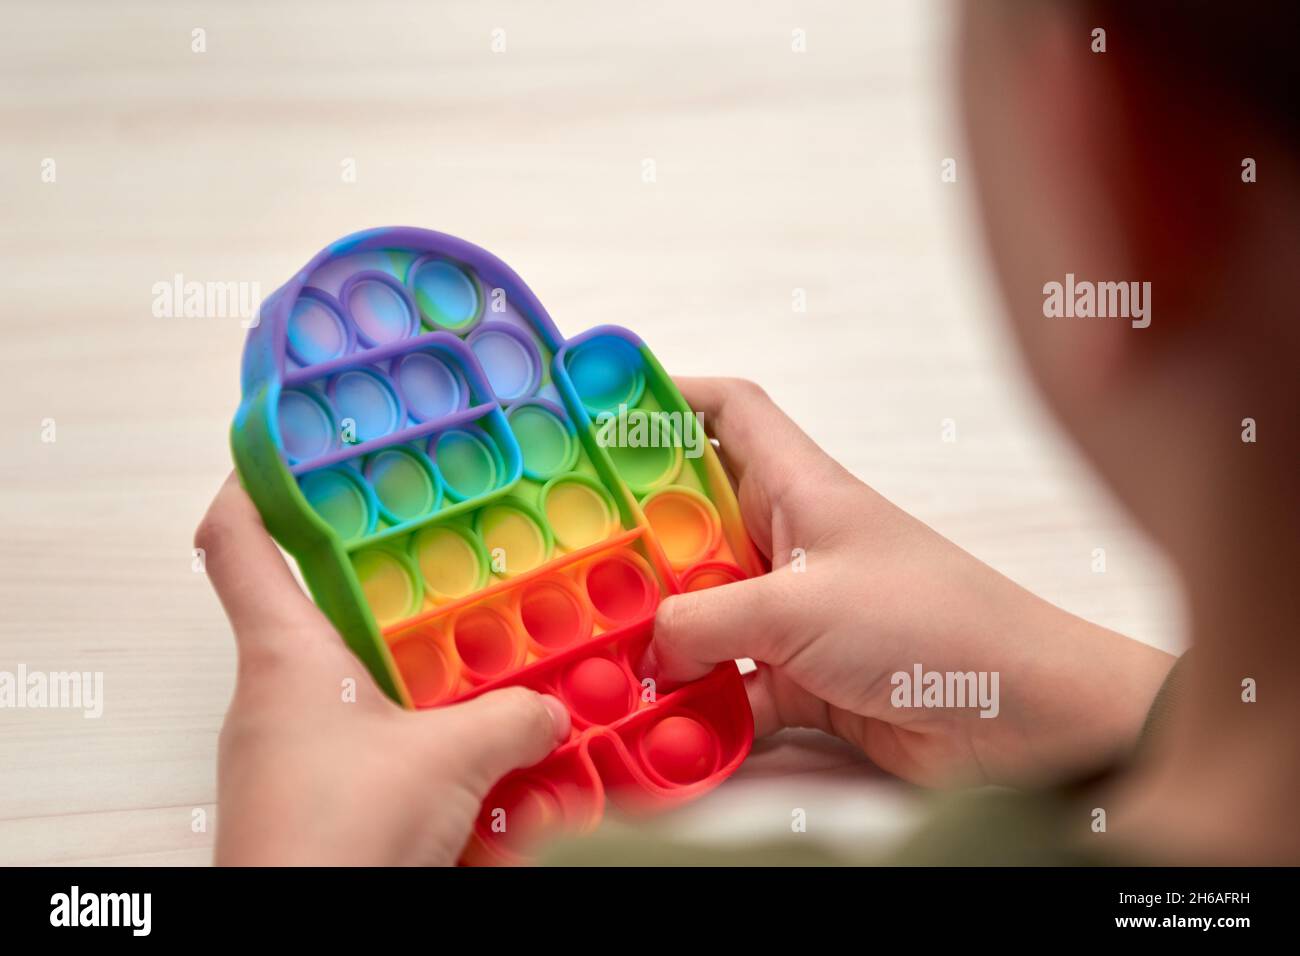 Kinder Hände schieben sensorische Pop it. Farbenfrohe Antistress-Spielzeuge, einfache Grübchen, Pop-Tube. Rainbow Silikon sensorische Fidget Neue beliebte trendige Silikon-Spielzeug. Stockfoto